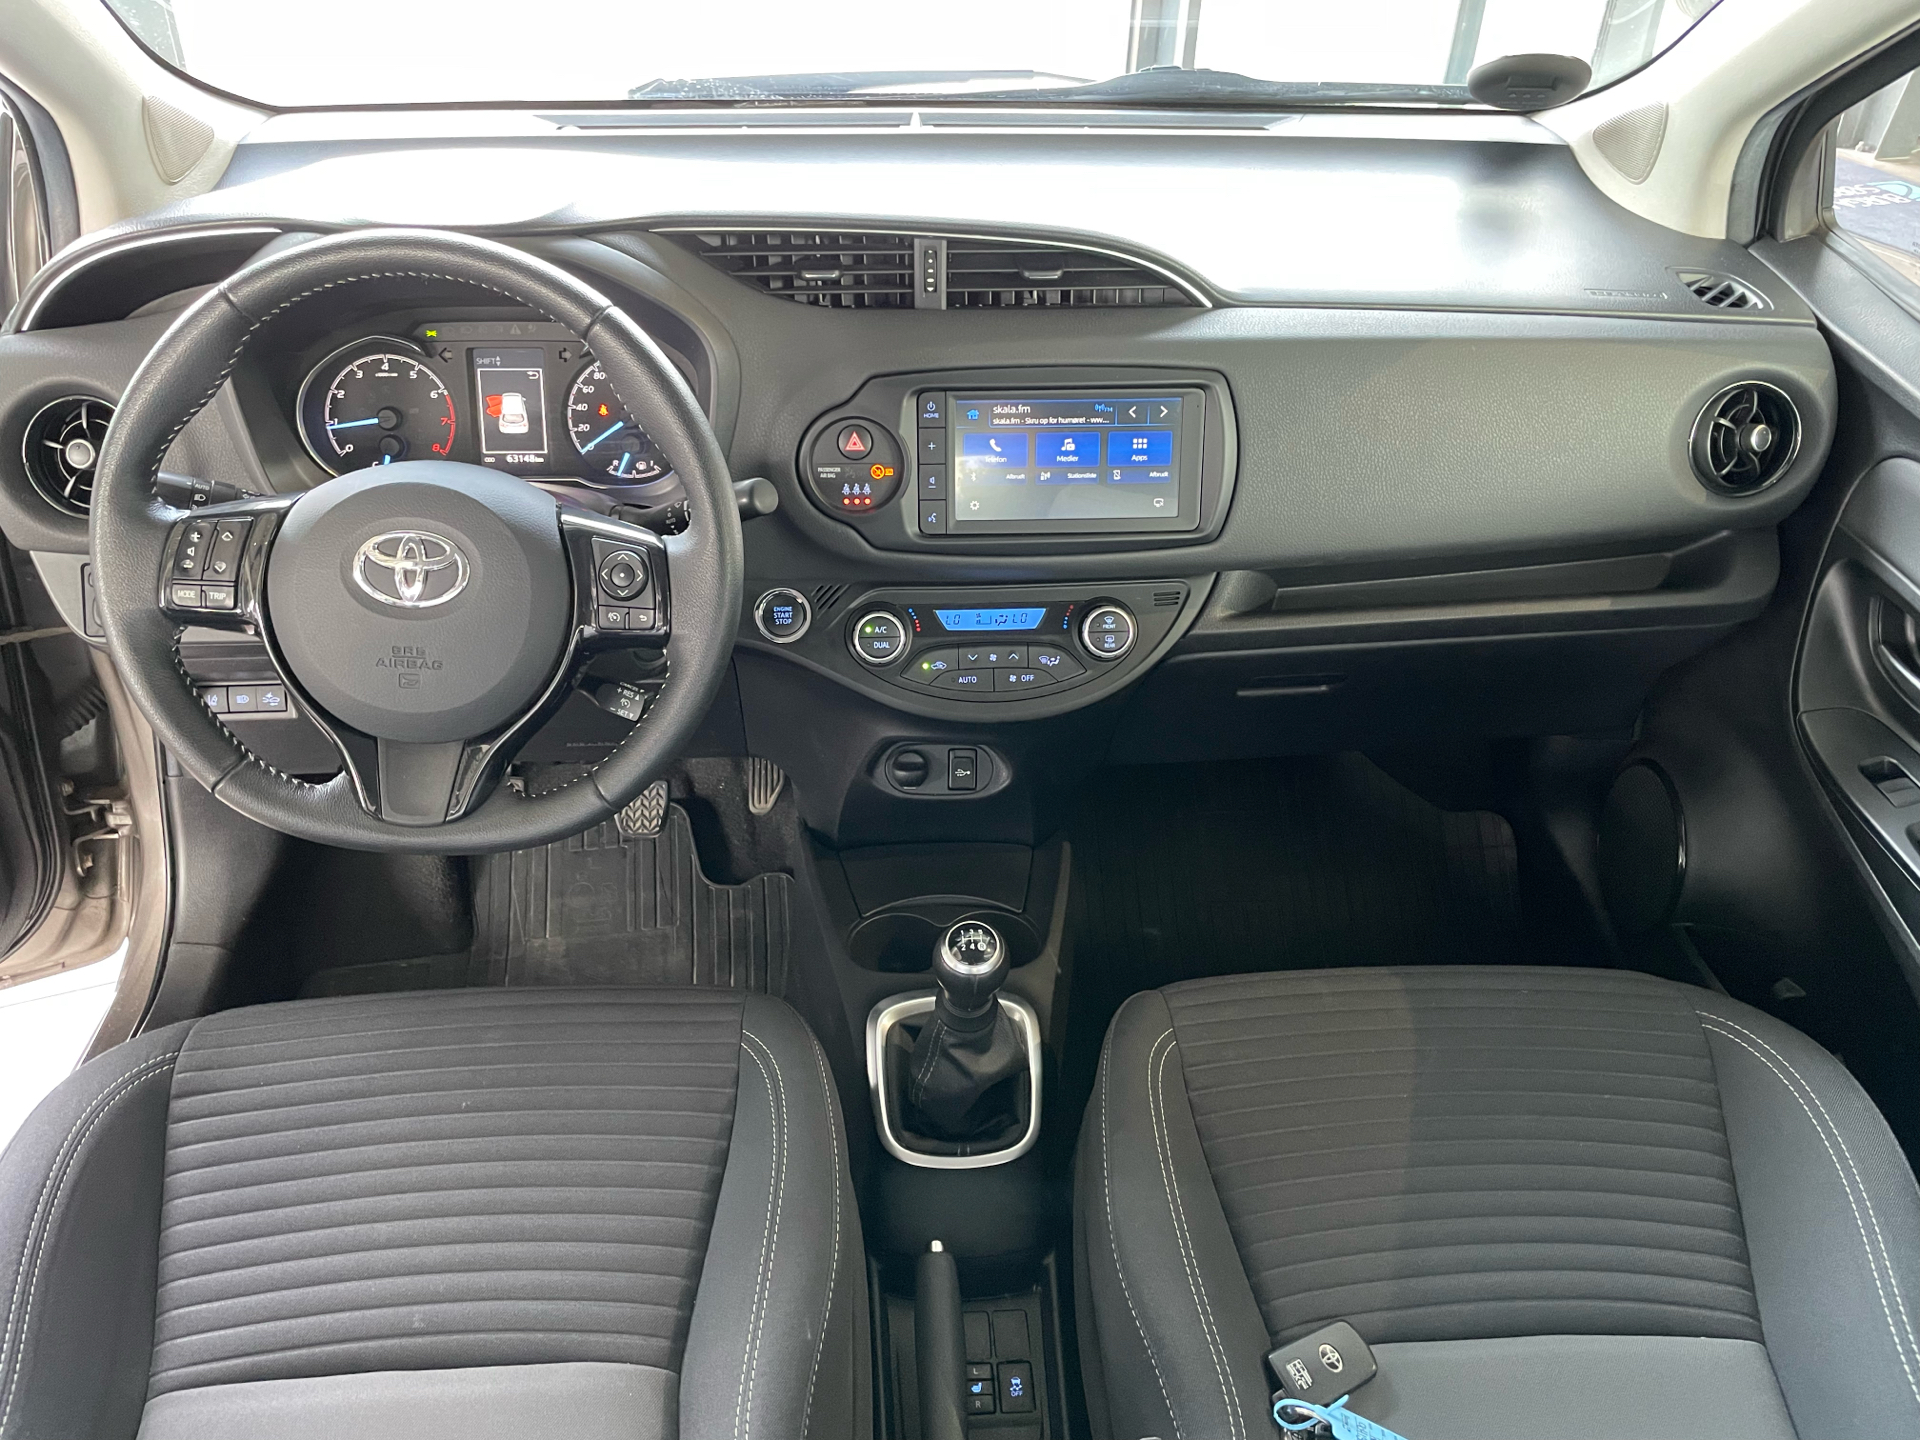 Billede af Toyota Yaris 1,0 VVT-I T3 Premiumpakke 72HK 5d